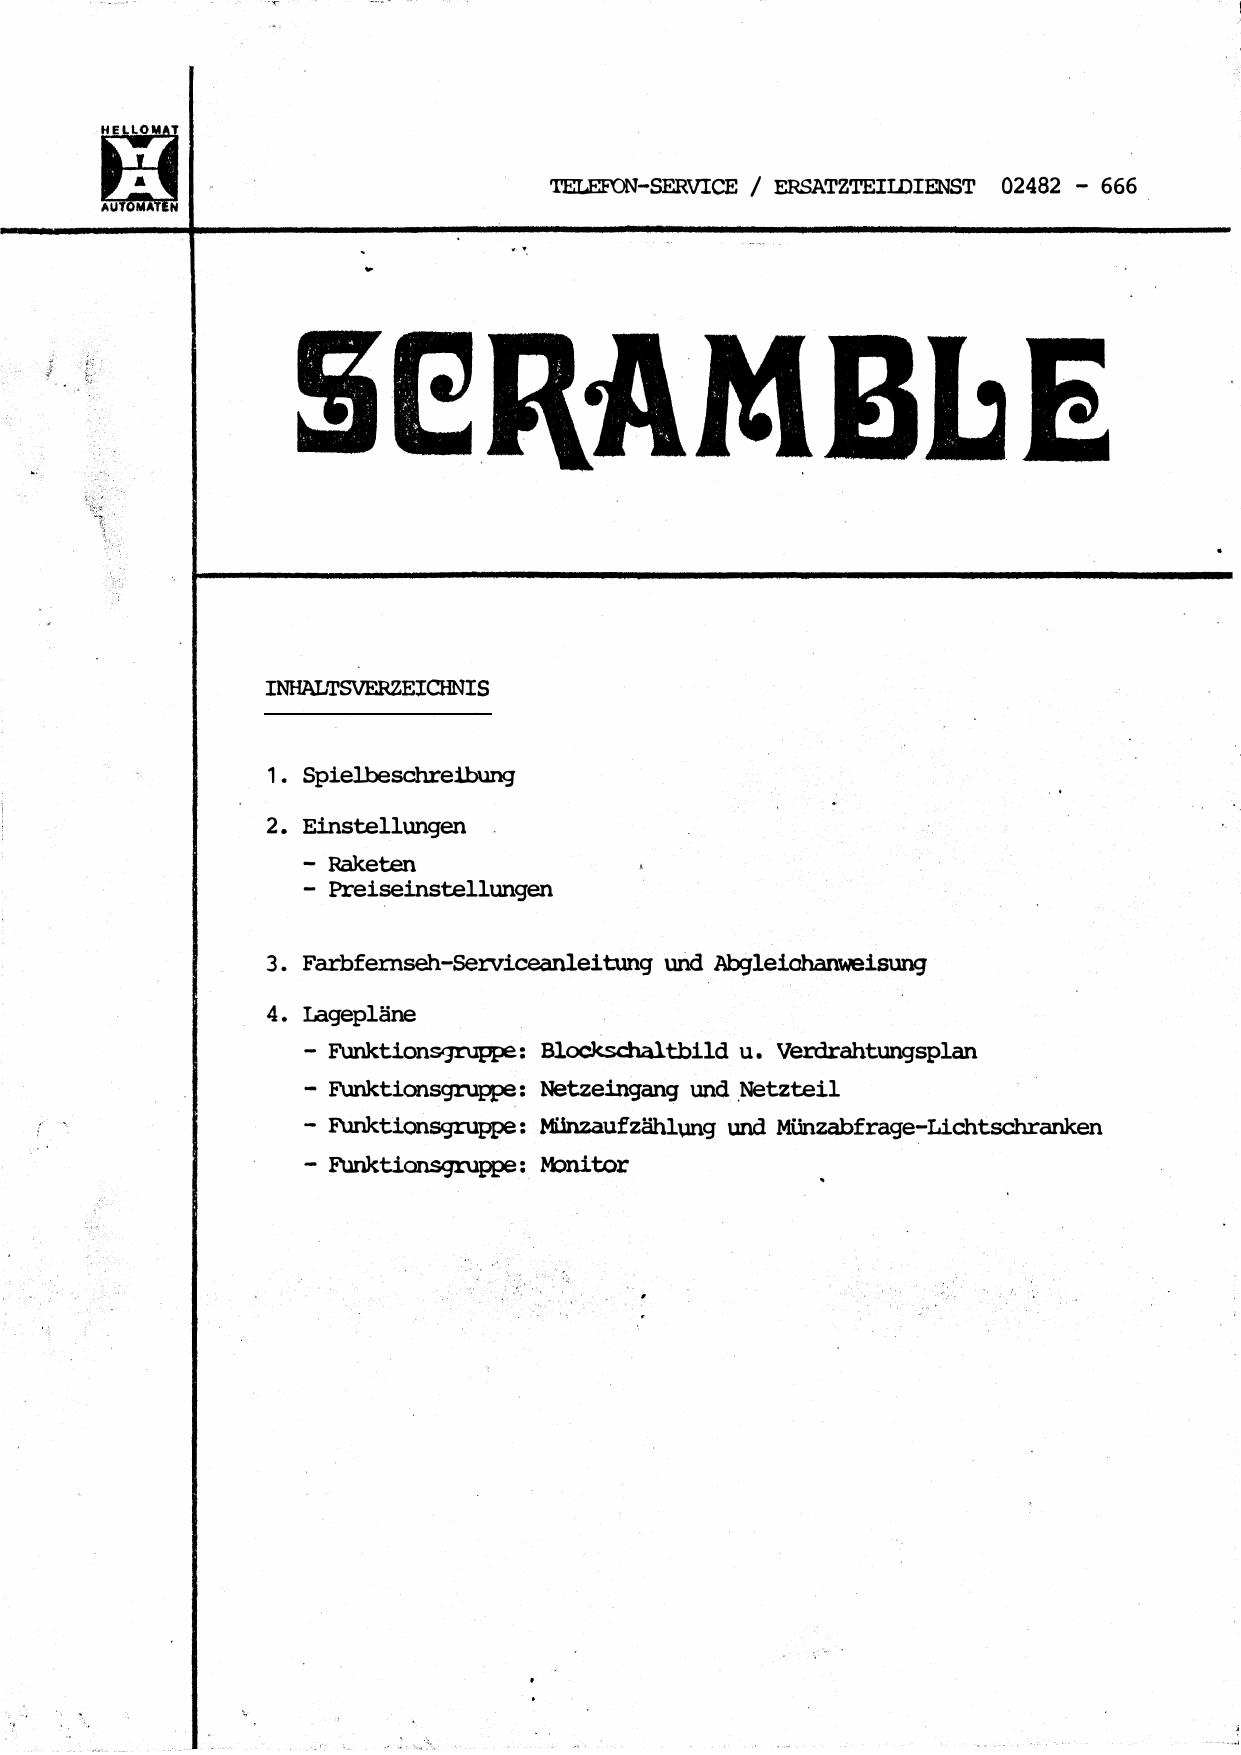 Scramble (Deutsch)